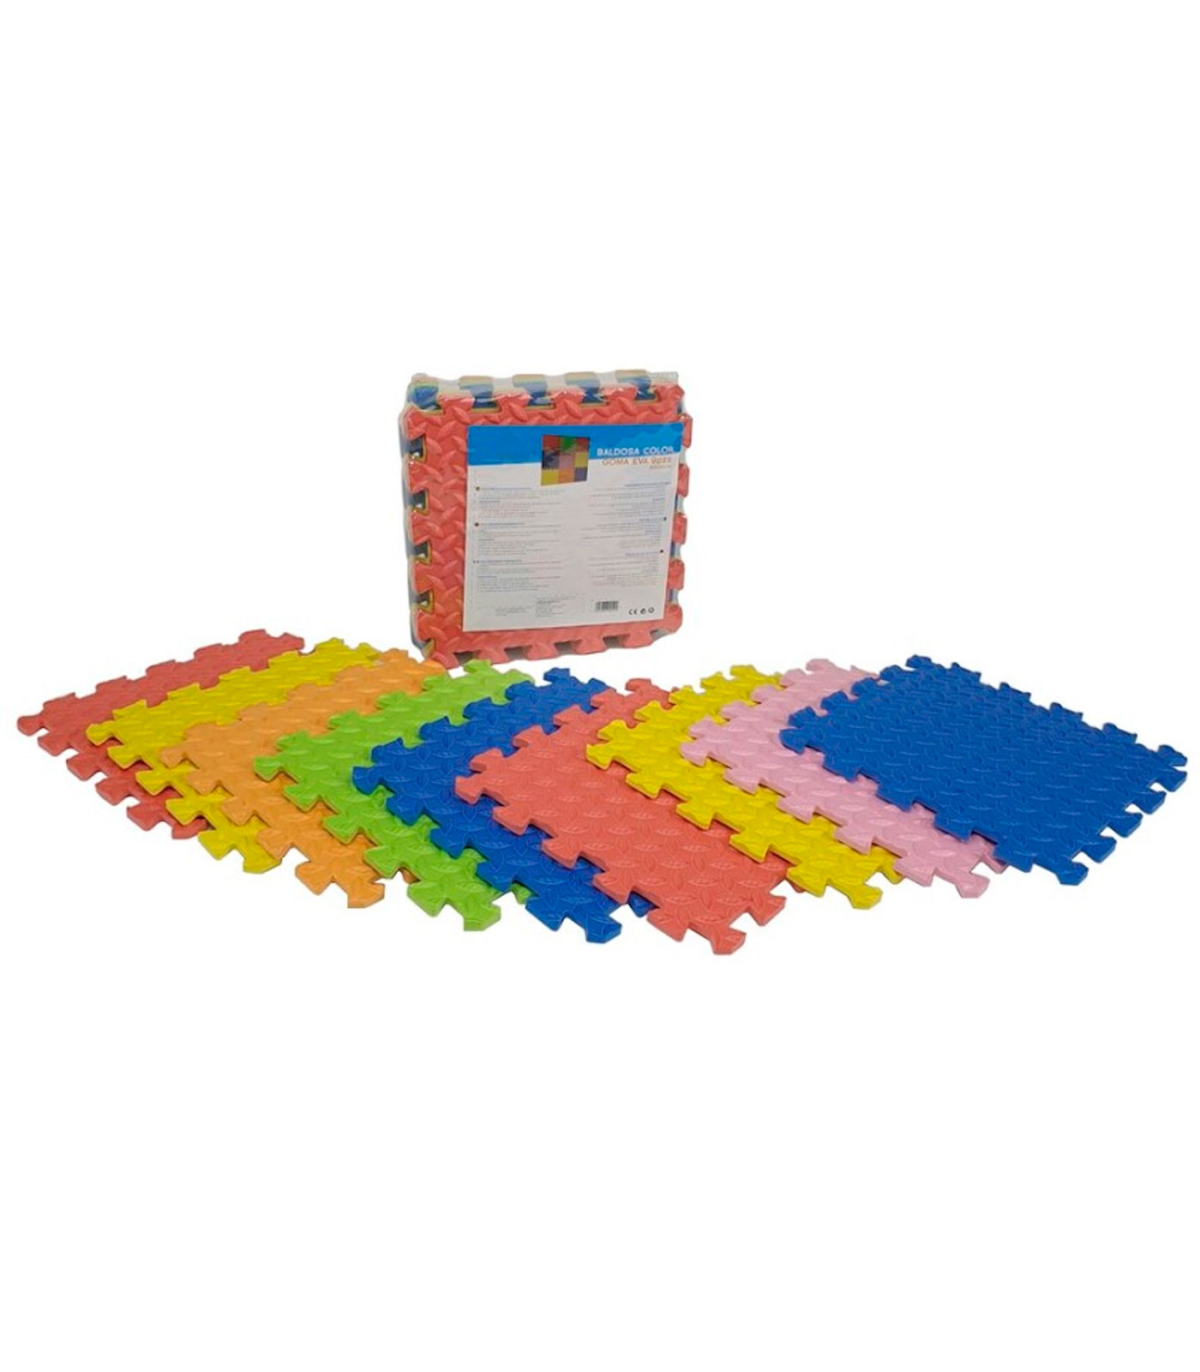 Pack de 9 baldosas de goma eva de colores, esterilla, puzzle para